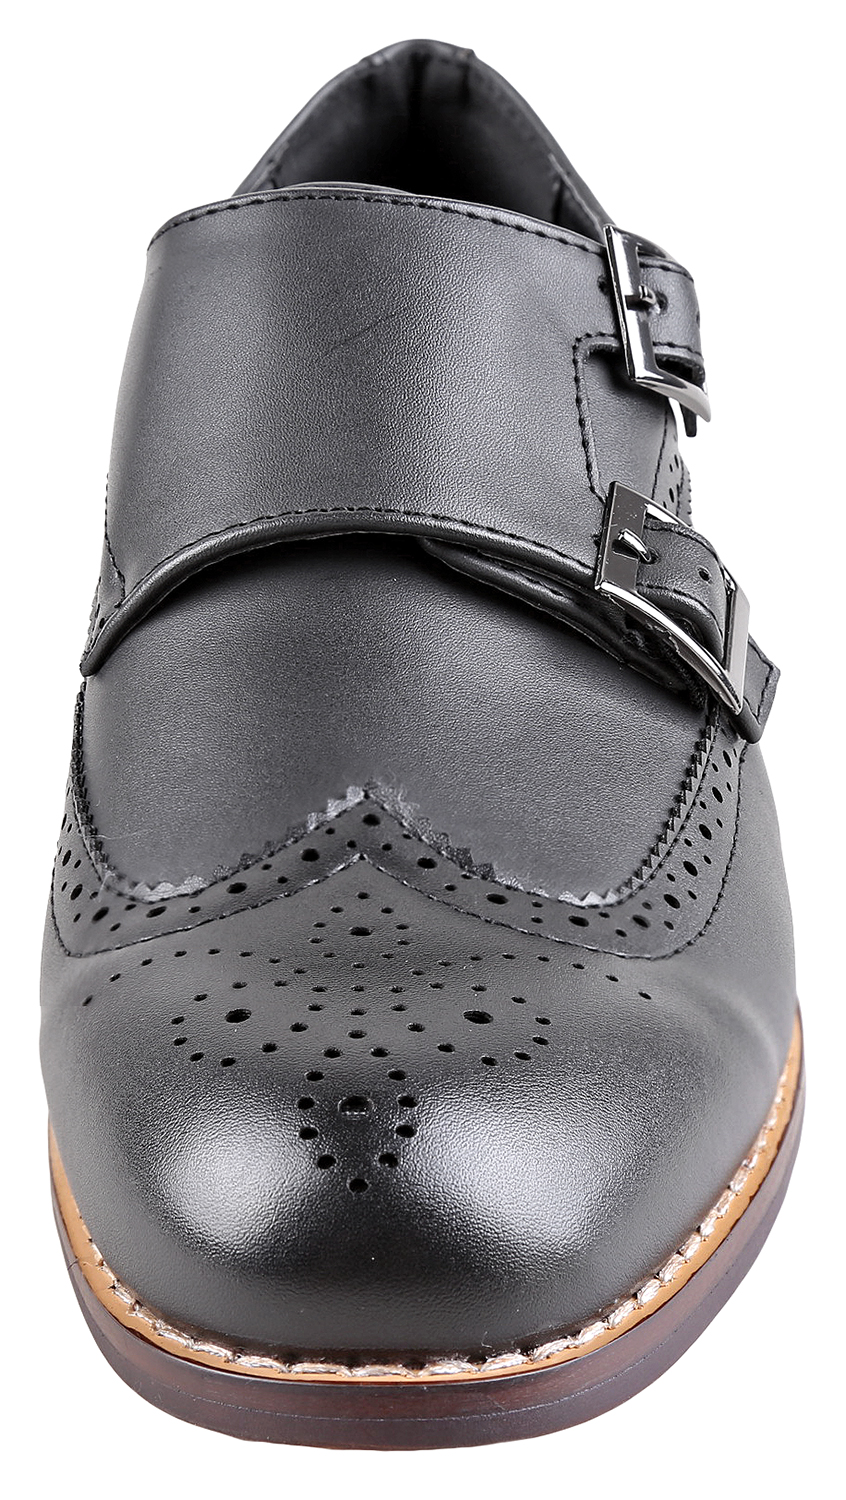 Urban Fox Allen Men's Dress Shoe | Double Monk Strap | Brogue | Wingtip Shoes for Men | Black 9 M US - image 3 of 7